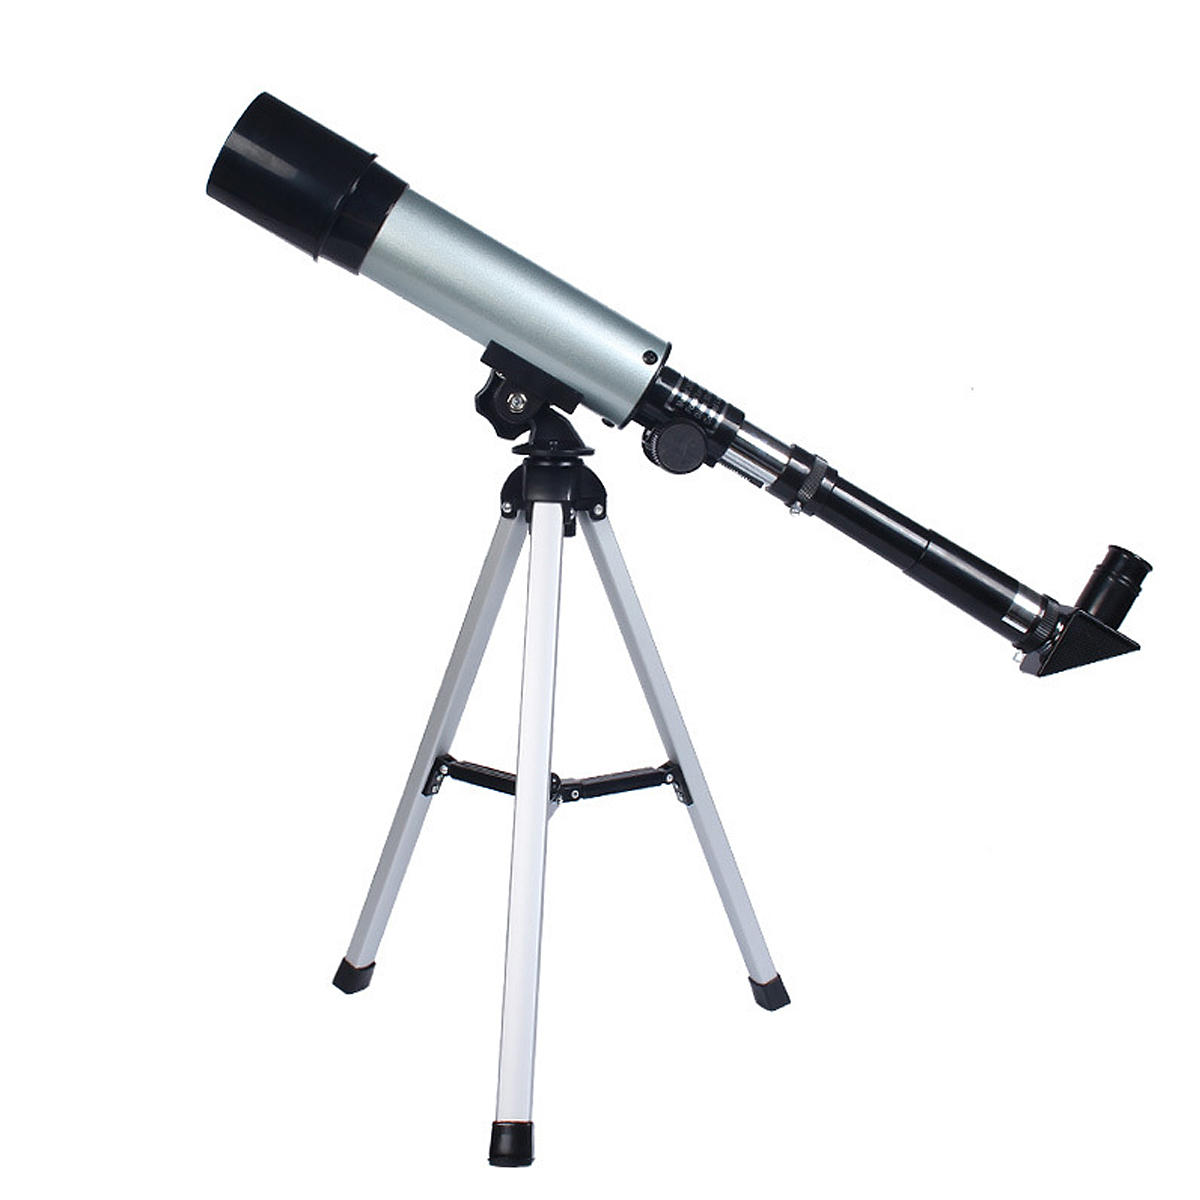 Télescope astronomique réfracteur F36050 90X avec miroir céleste à 90°. Image claire.